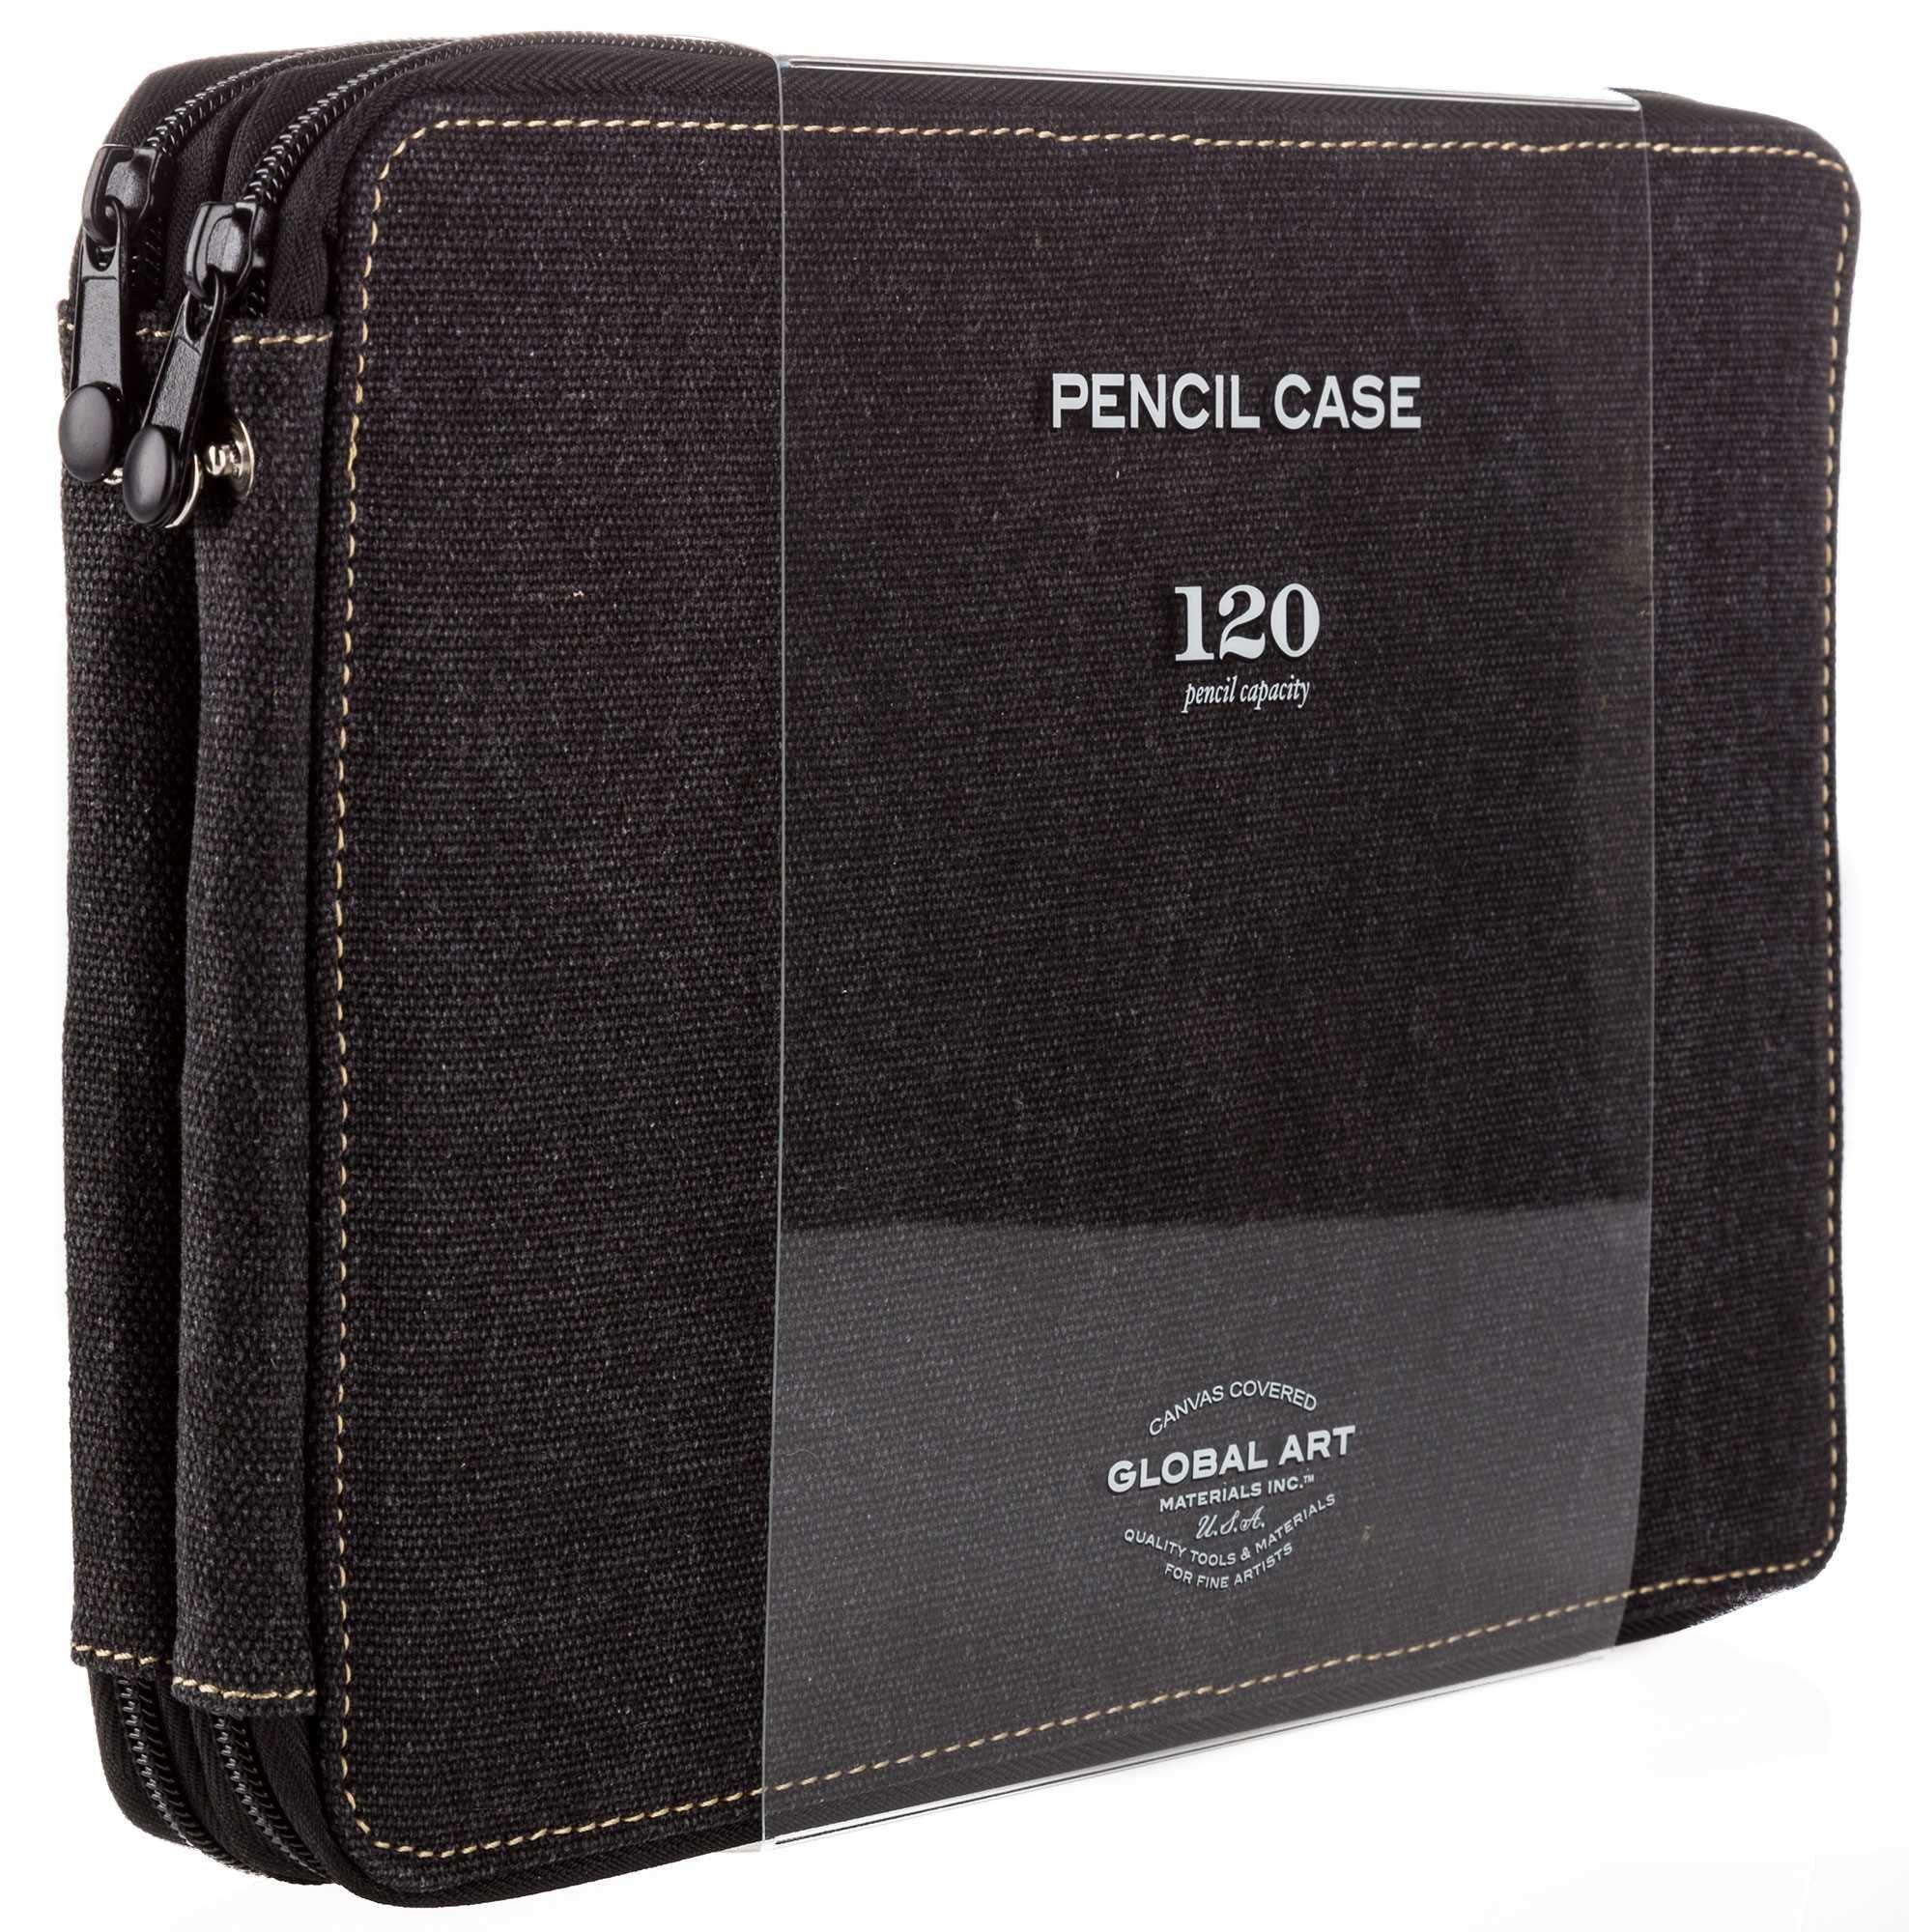 Arteza Pencil Case Black